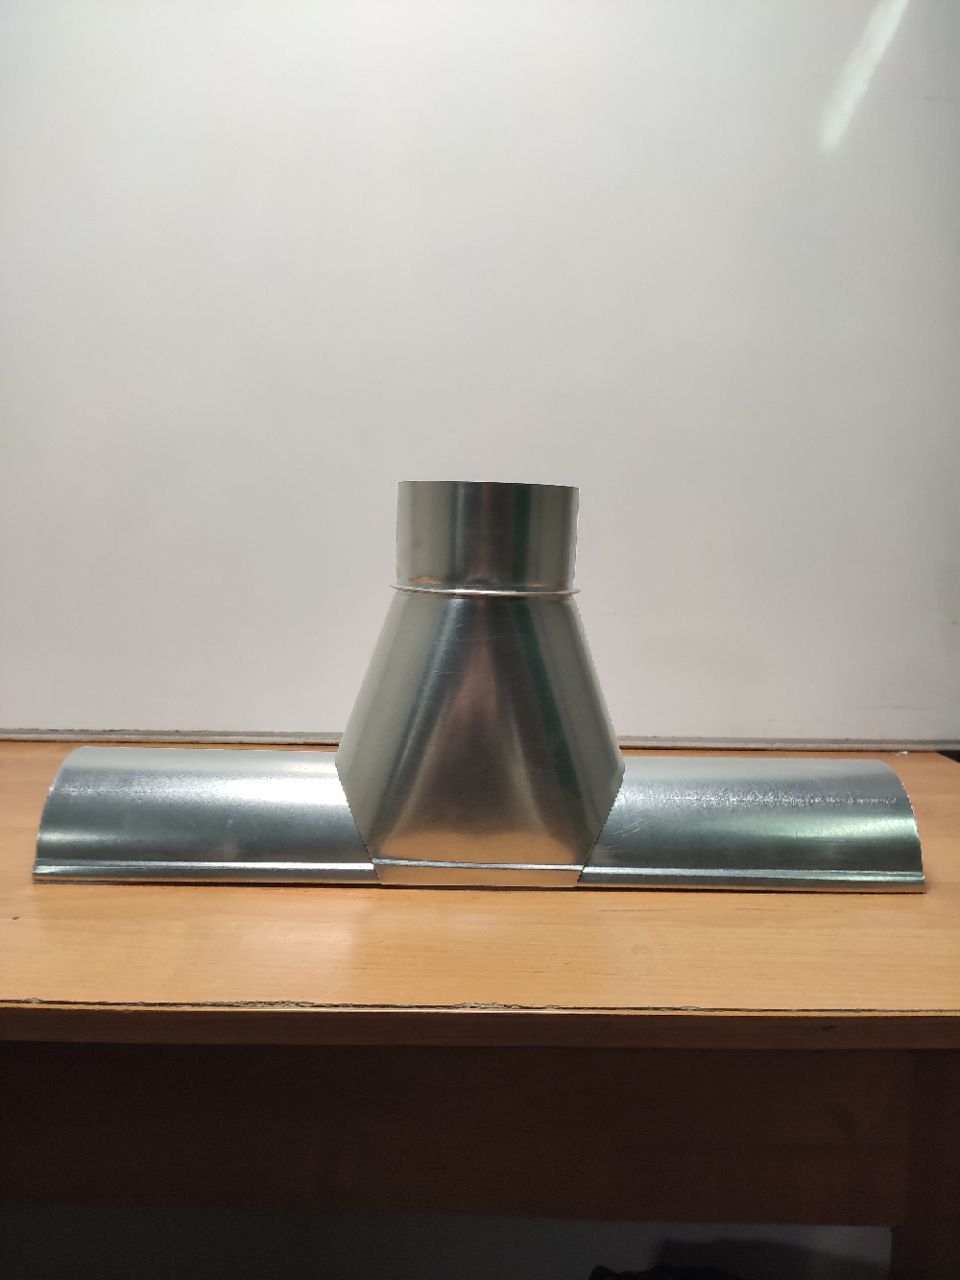 Канадка водосточная разных диаметров, толщиной металла 0.5 мм